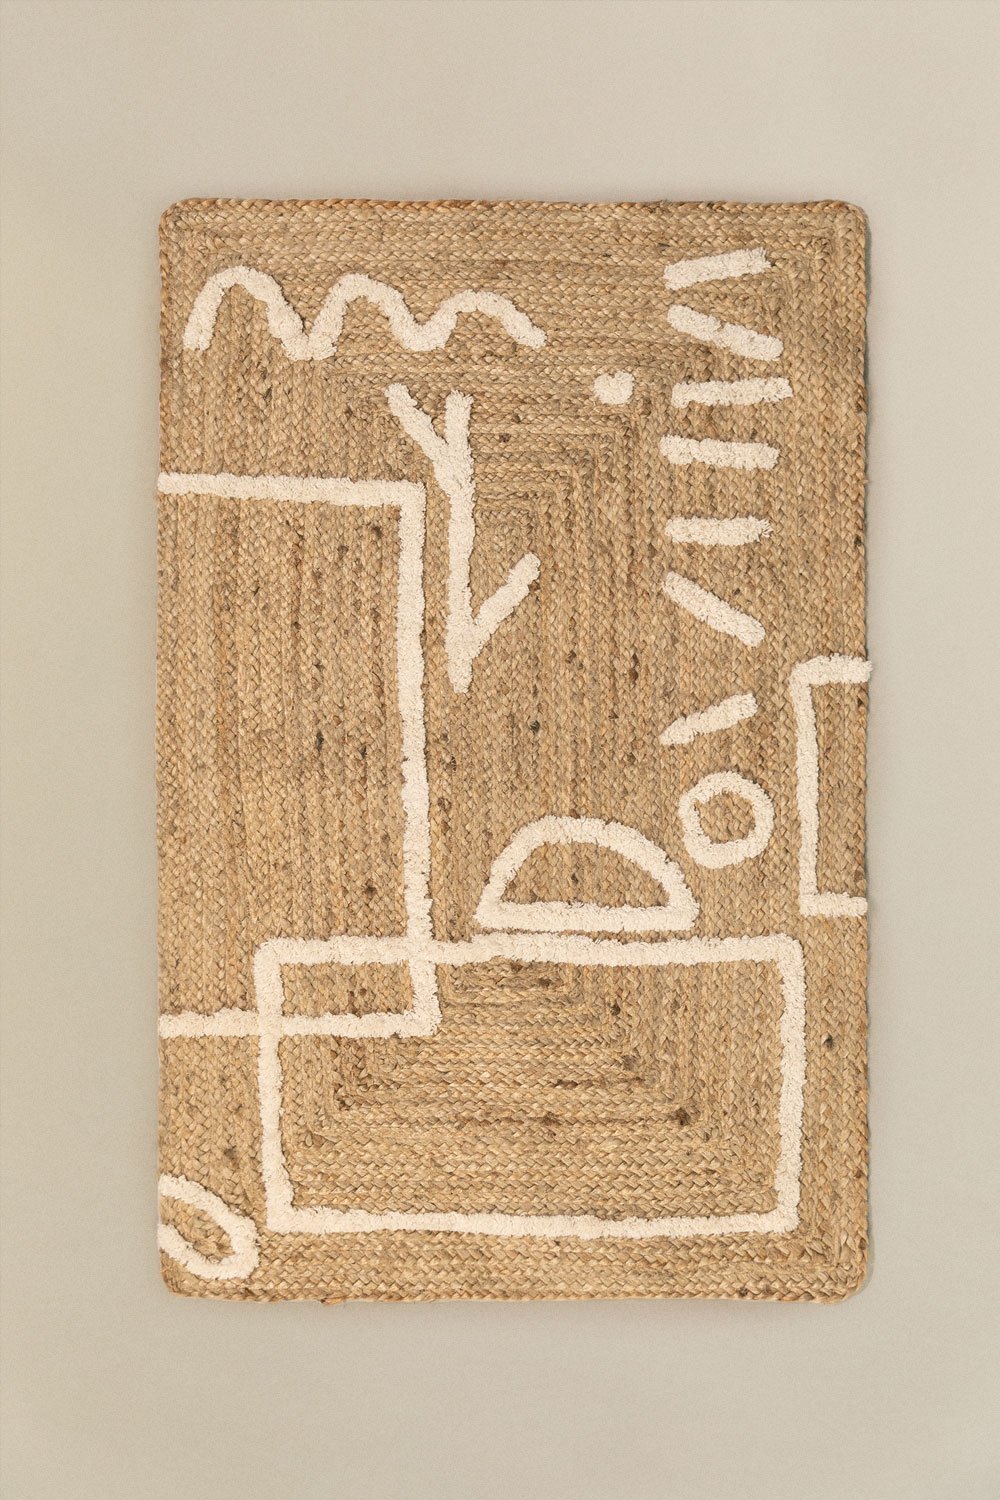 Tapete de Juta e Algodão (112x71 cm) Dudle, imagem de galeria 1